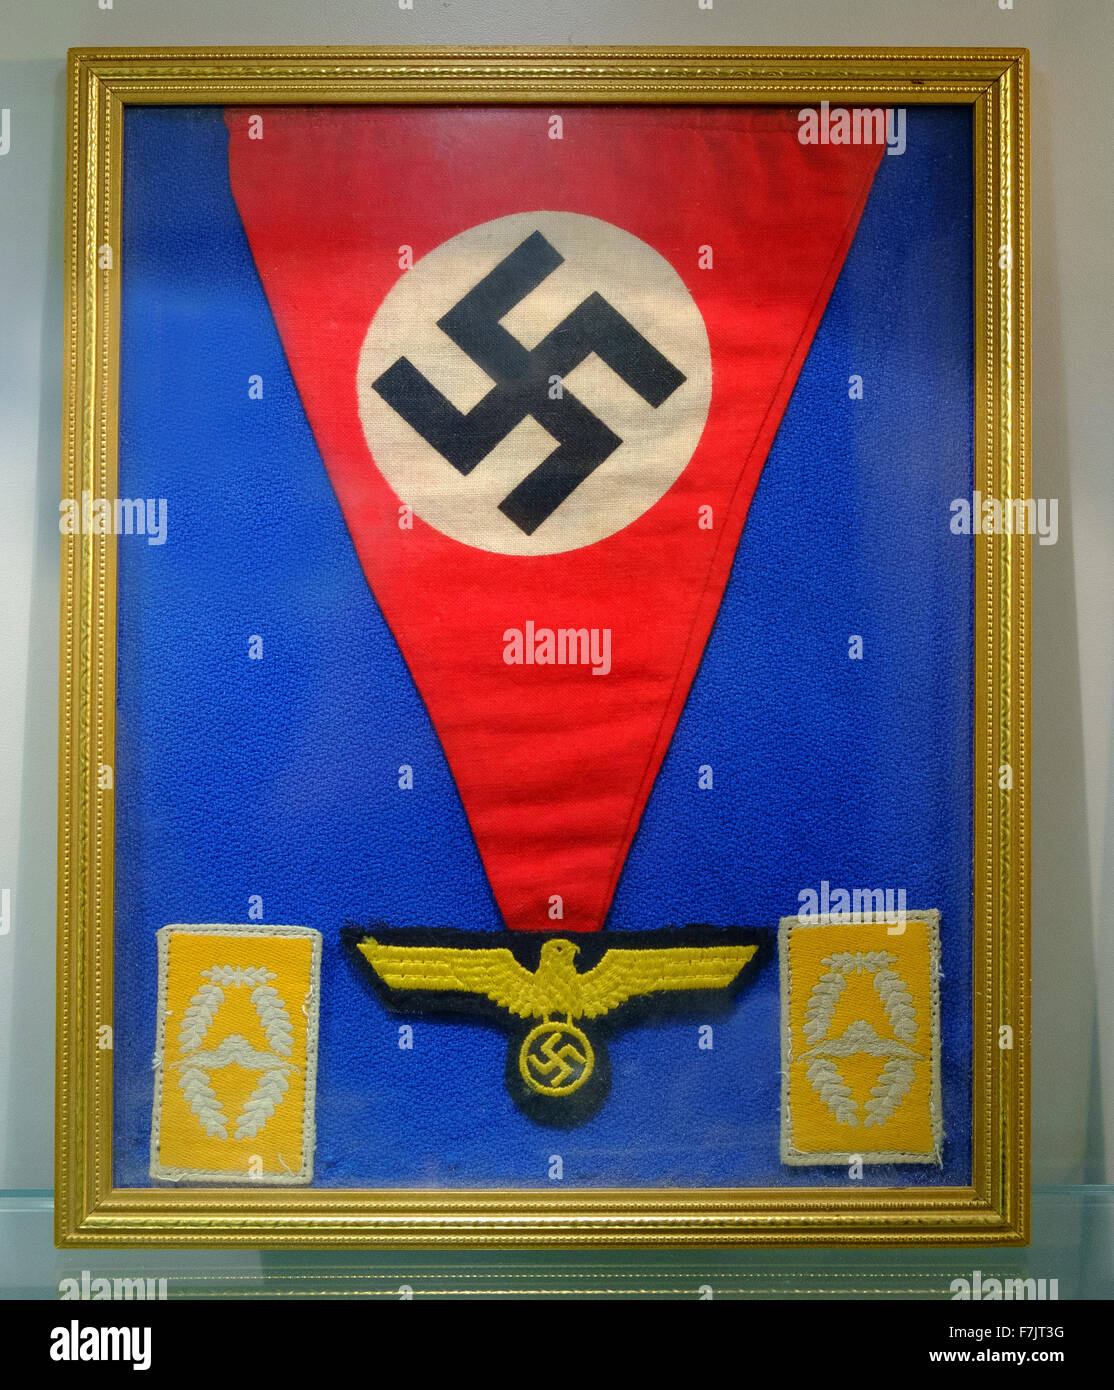 nazi swastika flag pennant eagle badge symbol Stock Photo